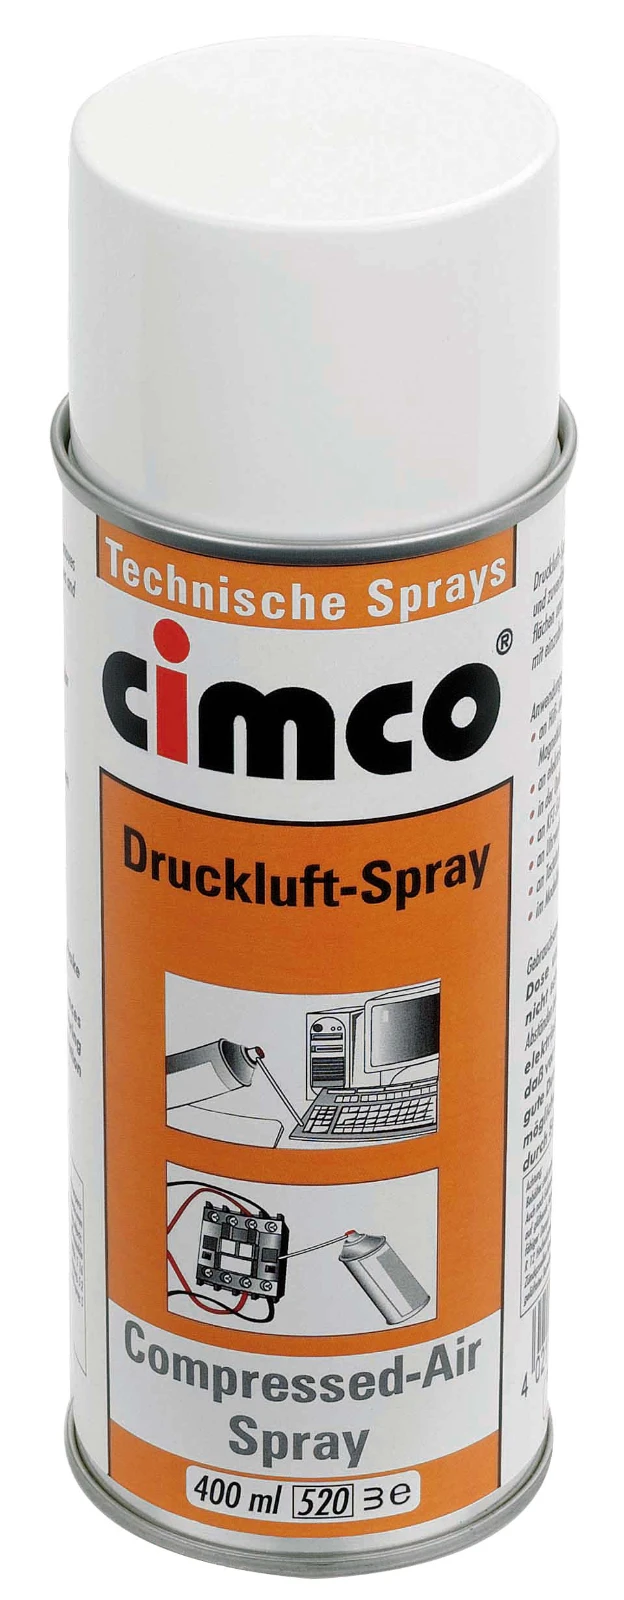 Cimco Spray 151092